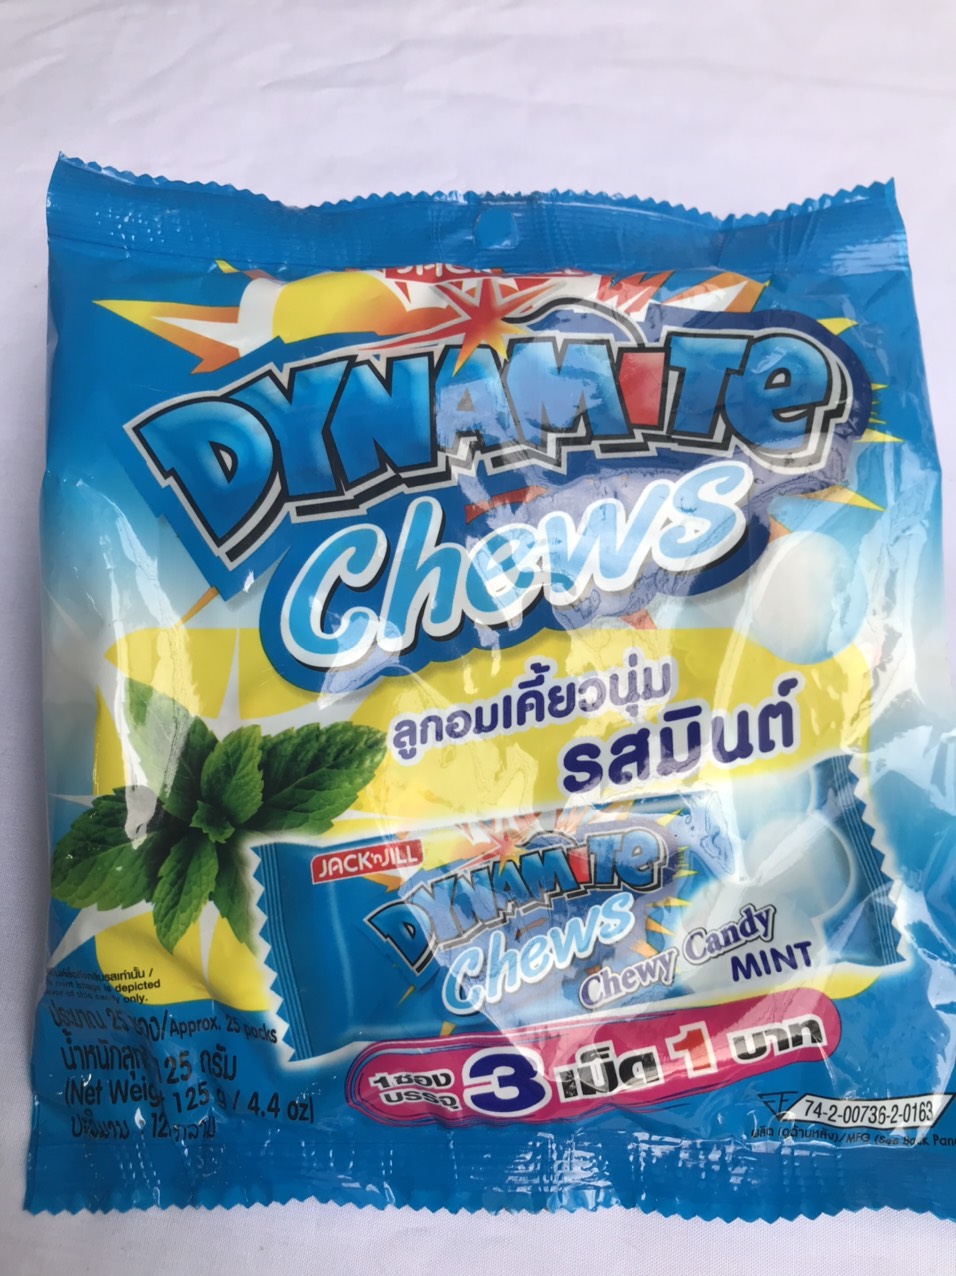 Kẹo Nhai xanh hương Bạc Hà 3 viên Dynamite Chews Mint Candy Gói 125g